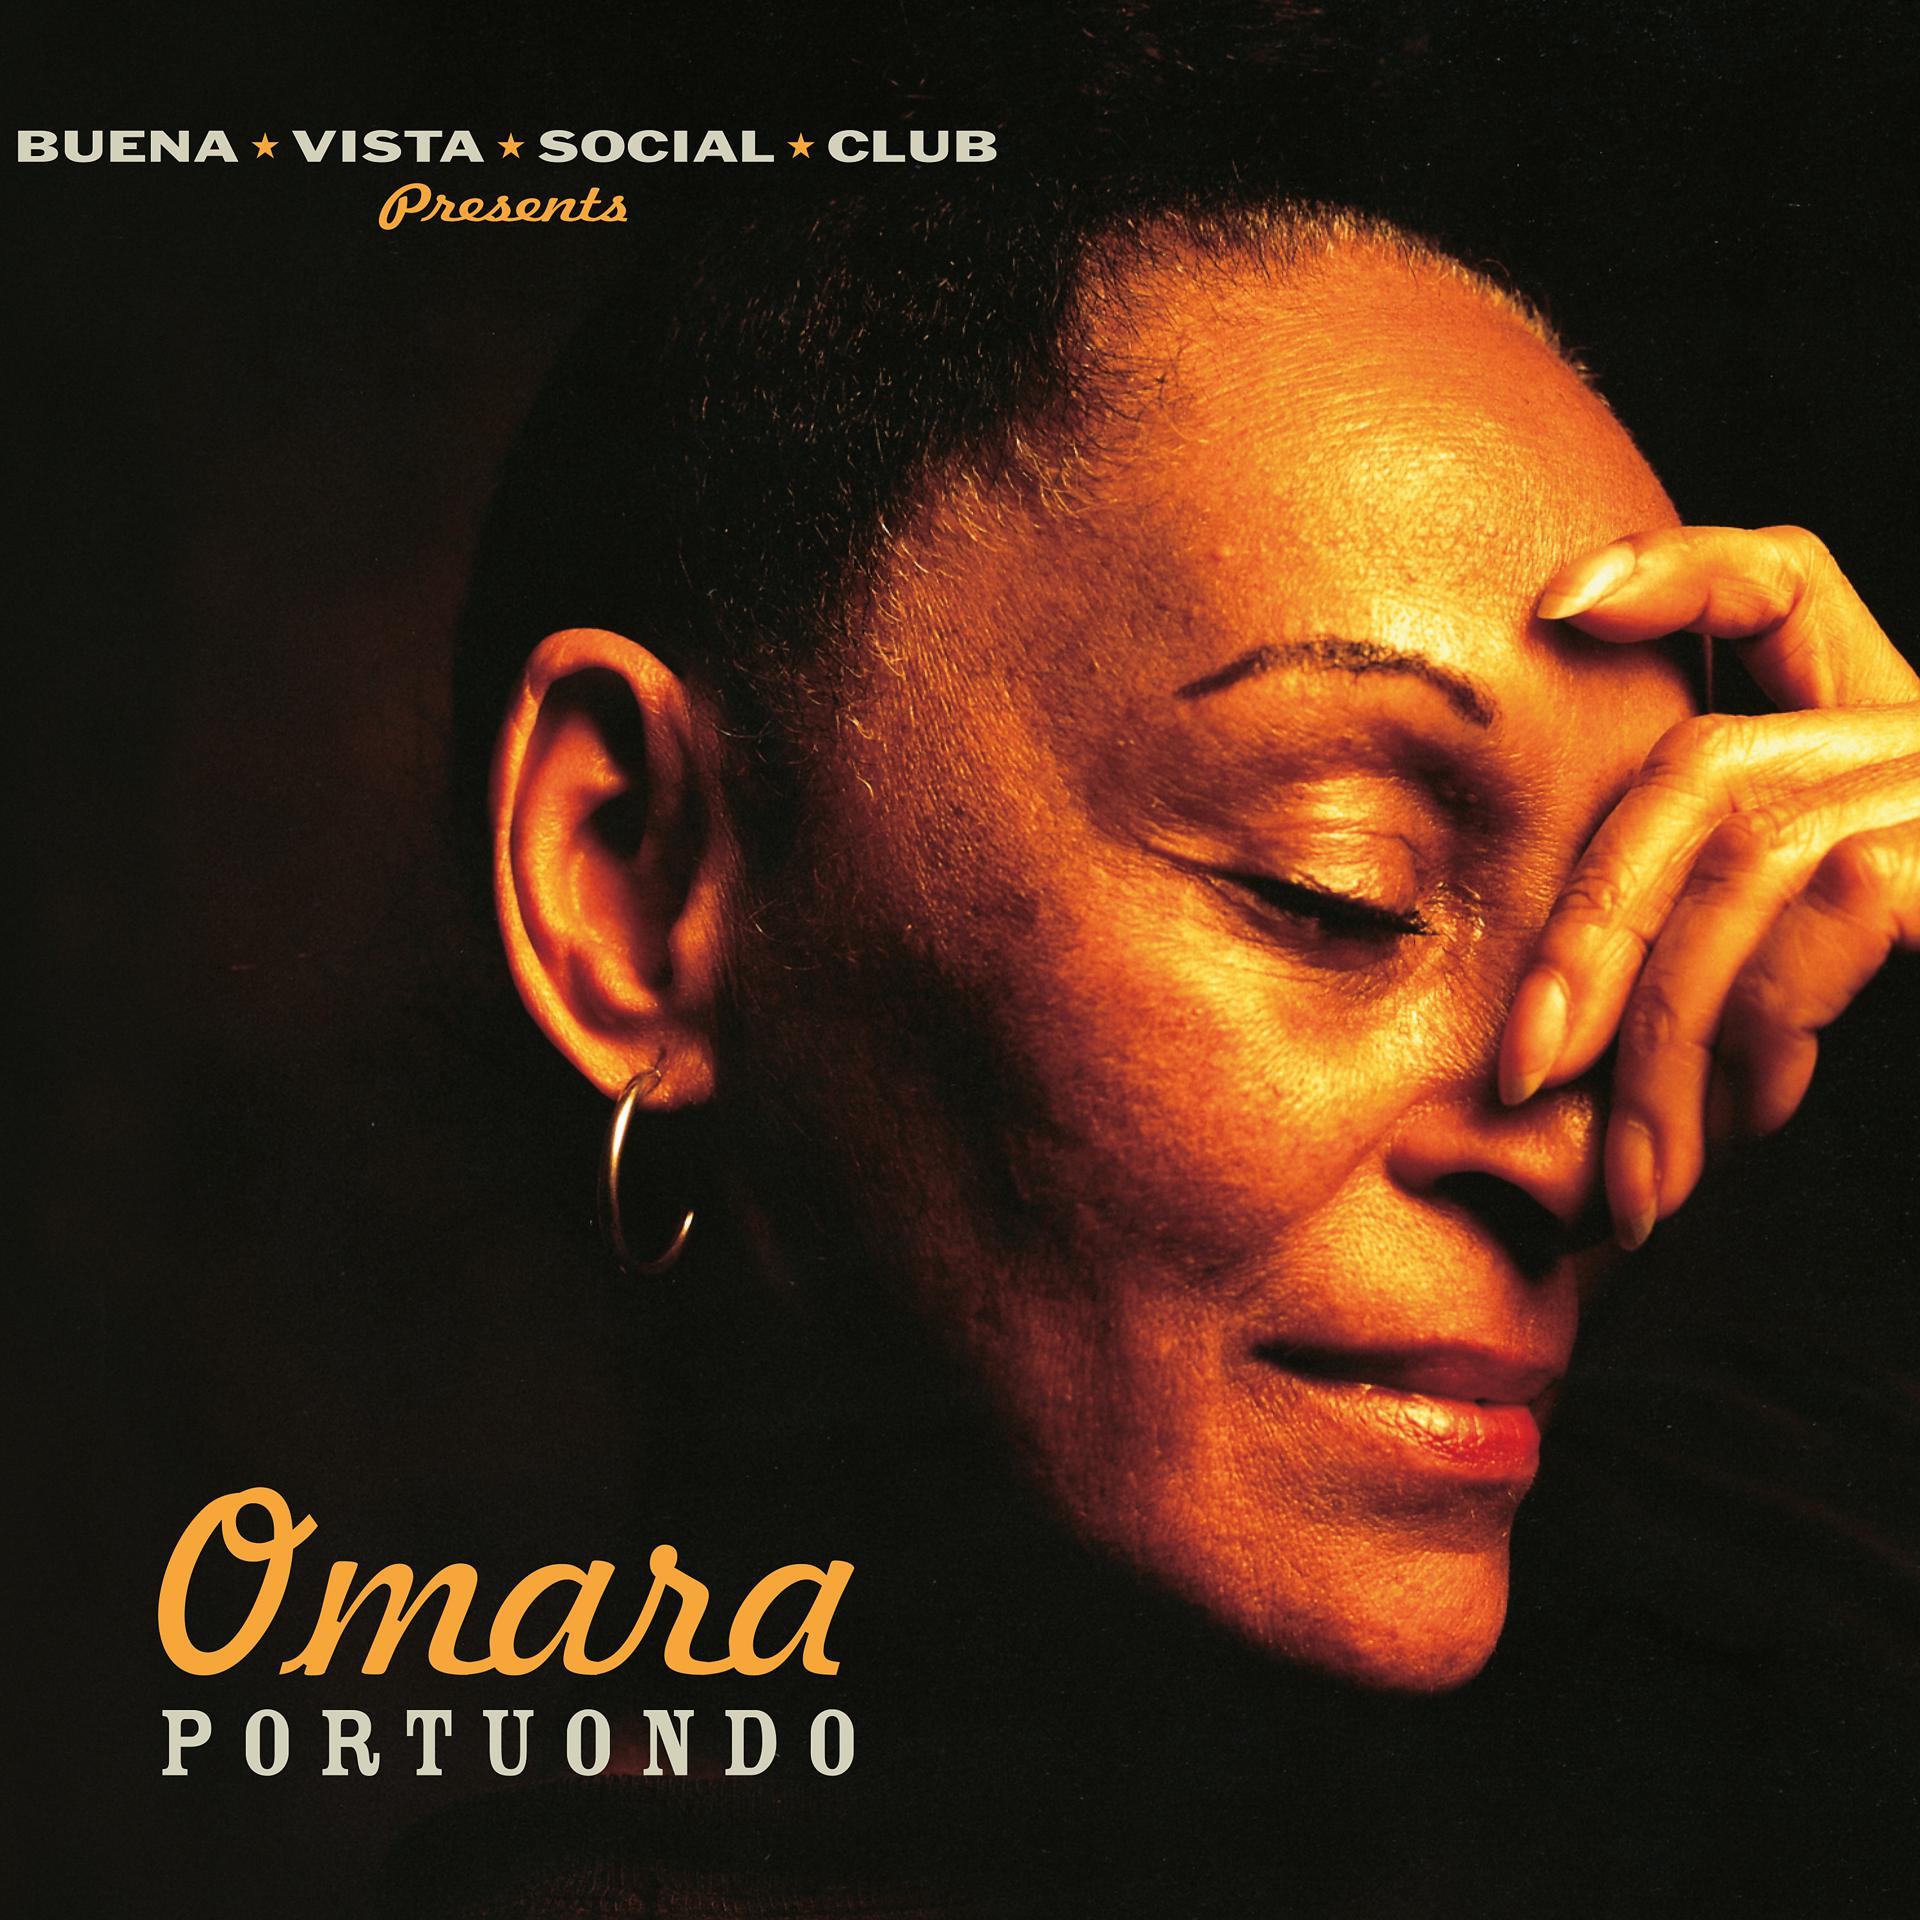 Постер альбома Omara Portuondo (Buena Vista Social Club Presents)